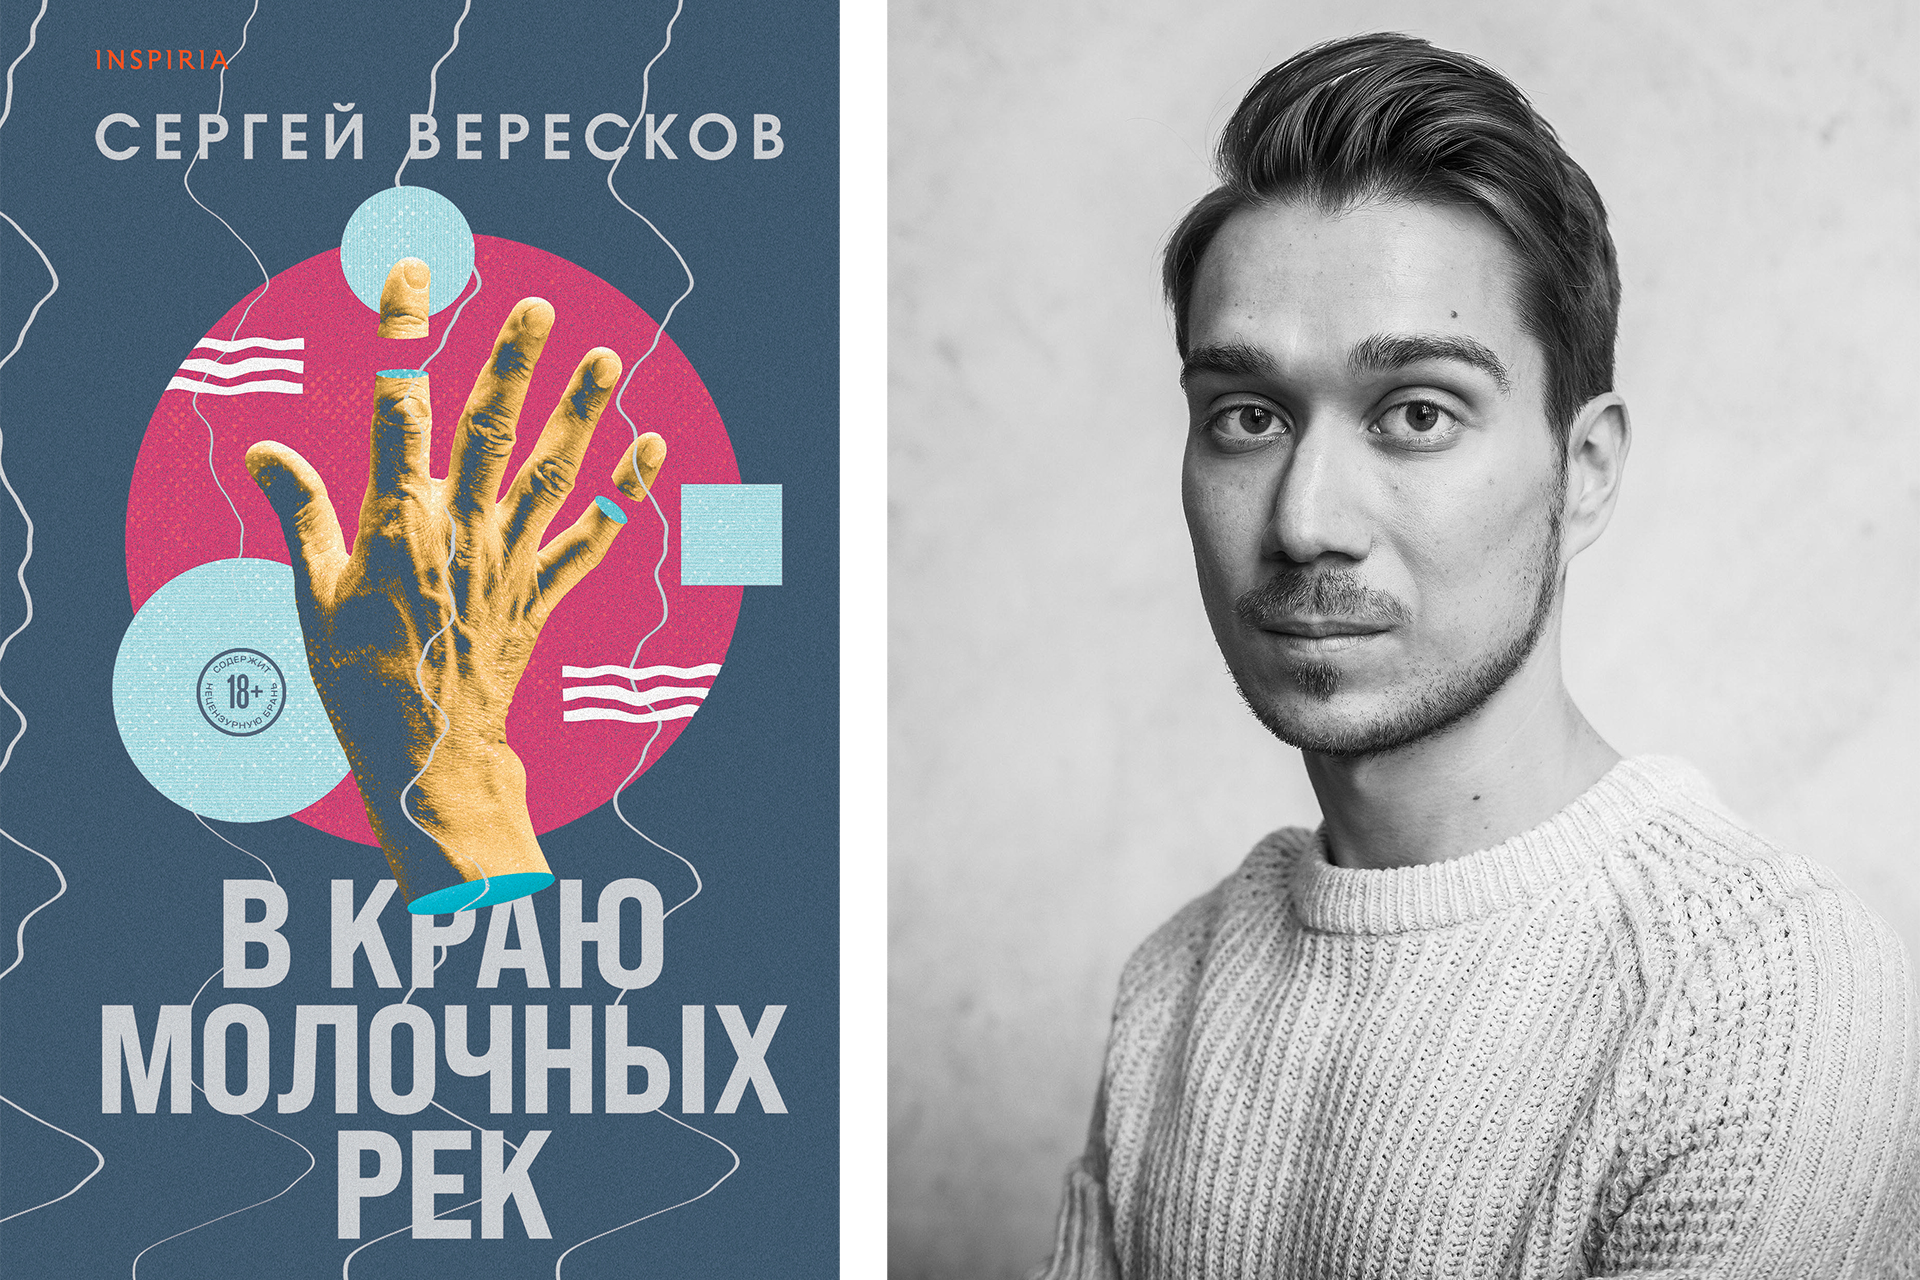 Слева: обложка книги; справа: Сергей Вересков